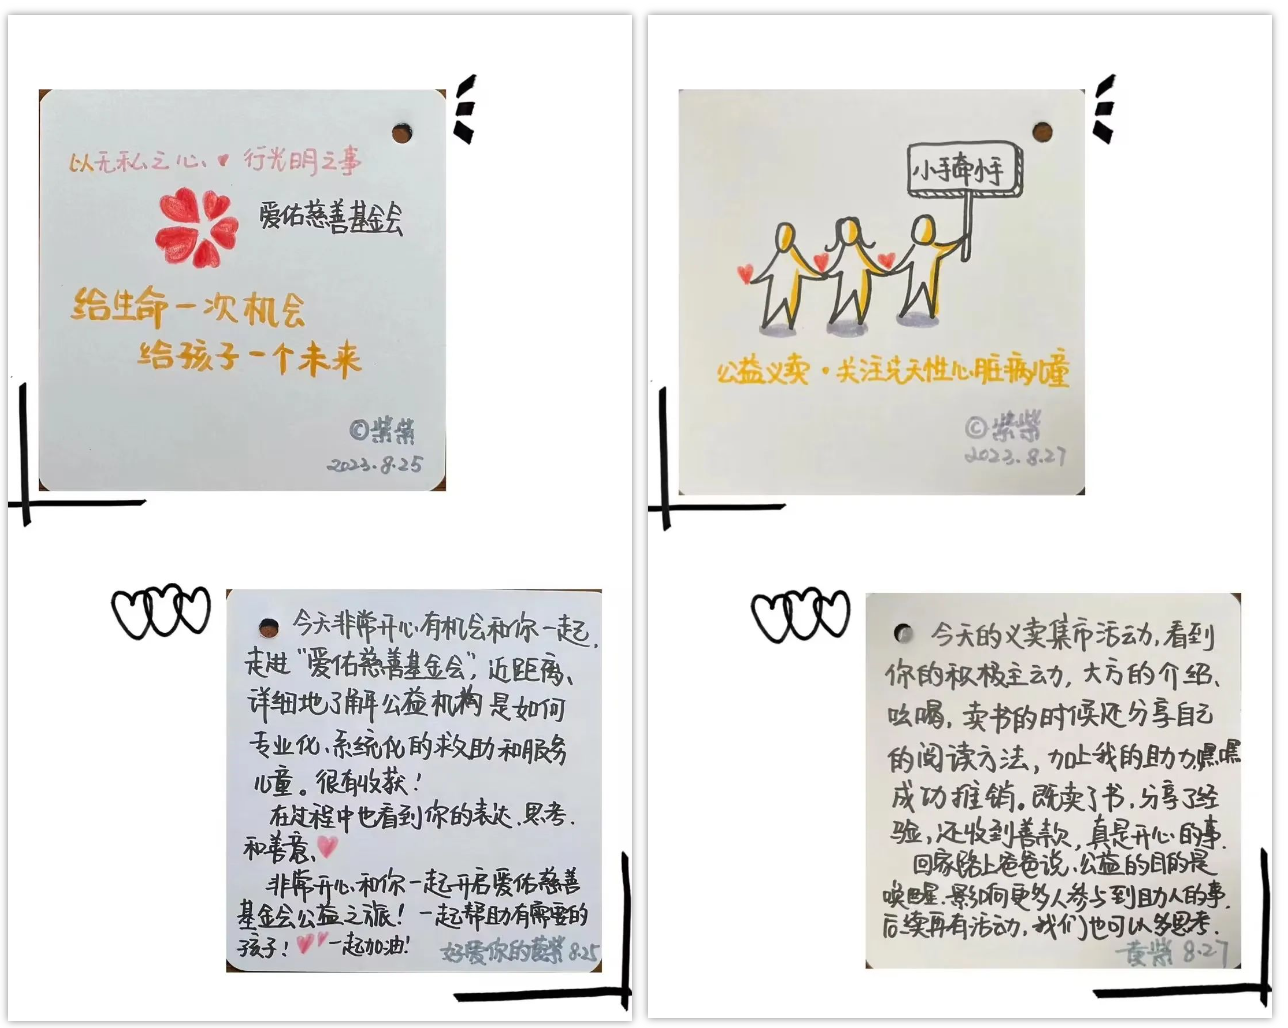 志愿者队长王昱翔的妈妈在参与两场活动后手写的卡片.png